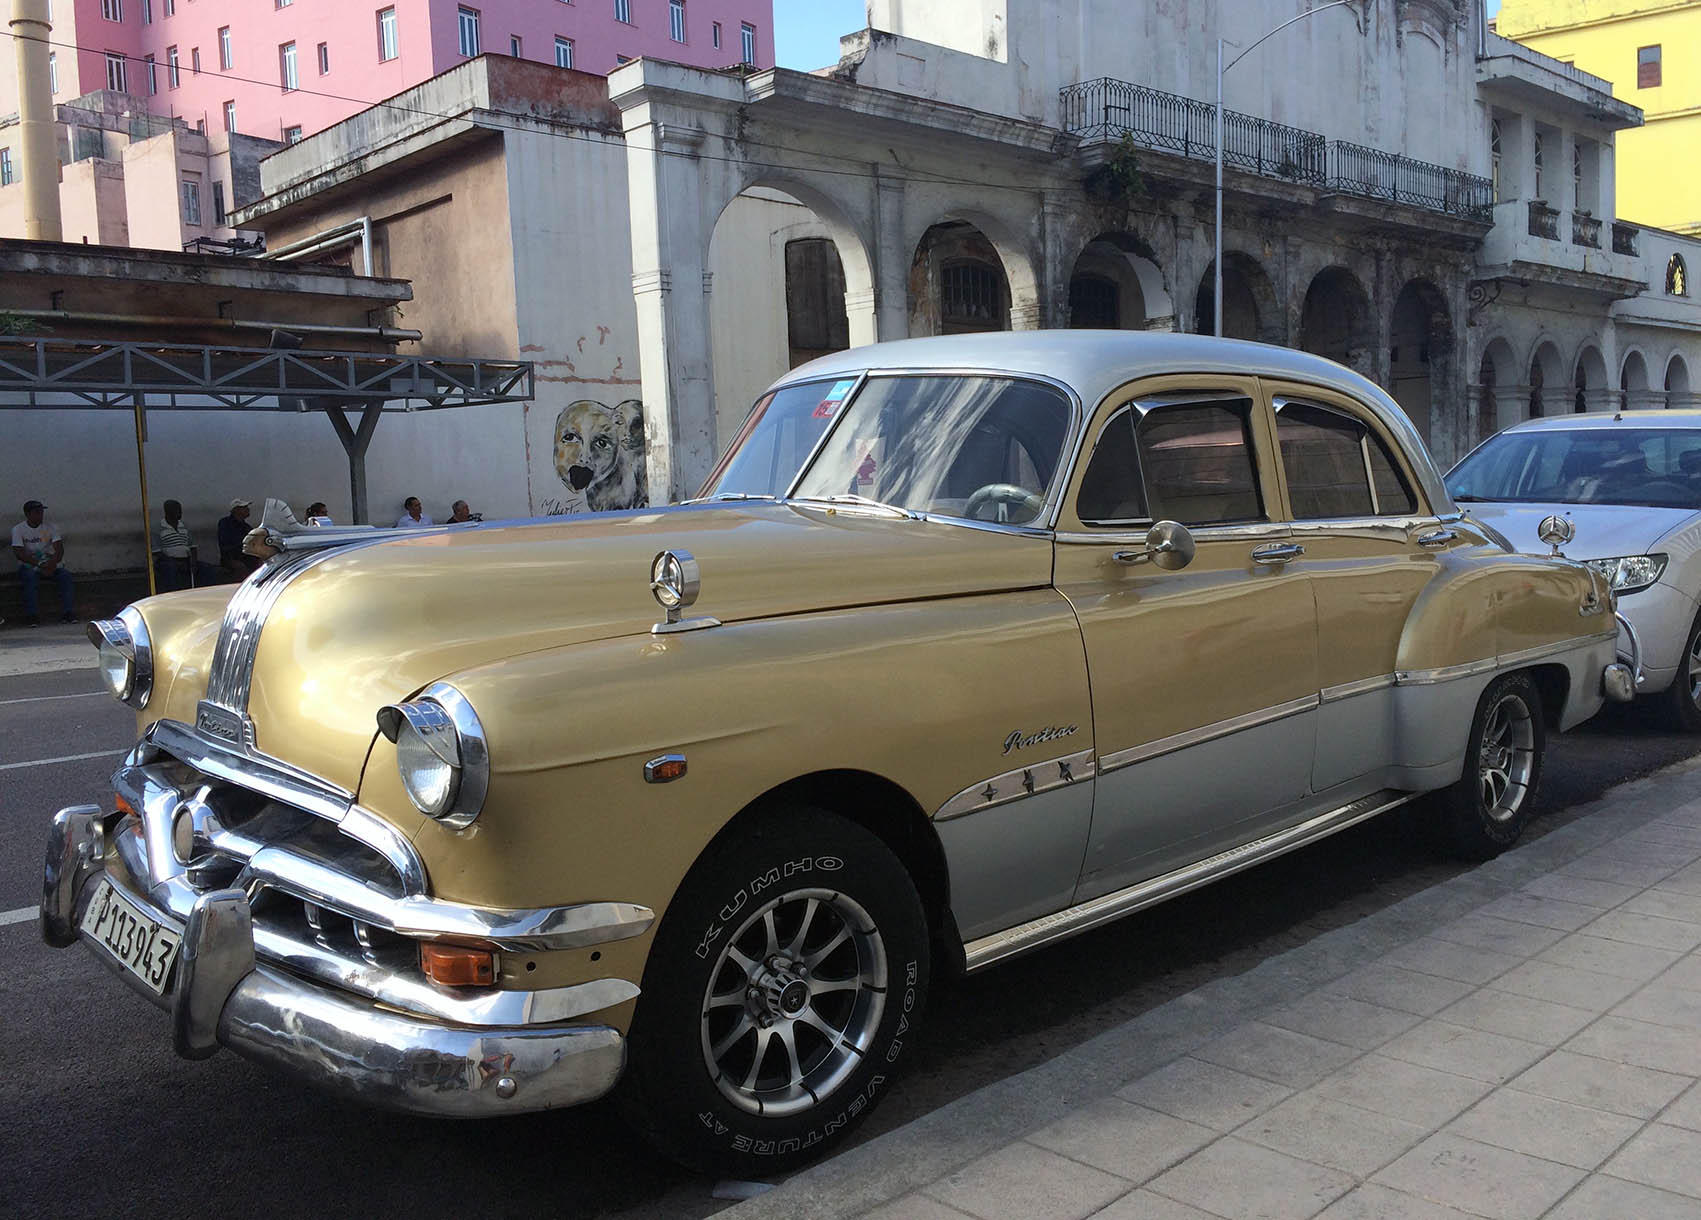 Fly & Drive en Cuba 2017, desde 650€